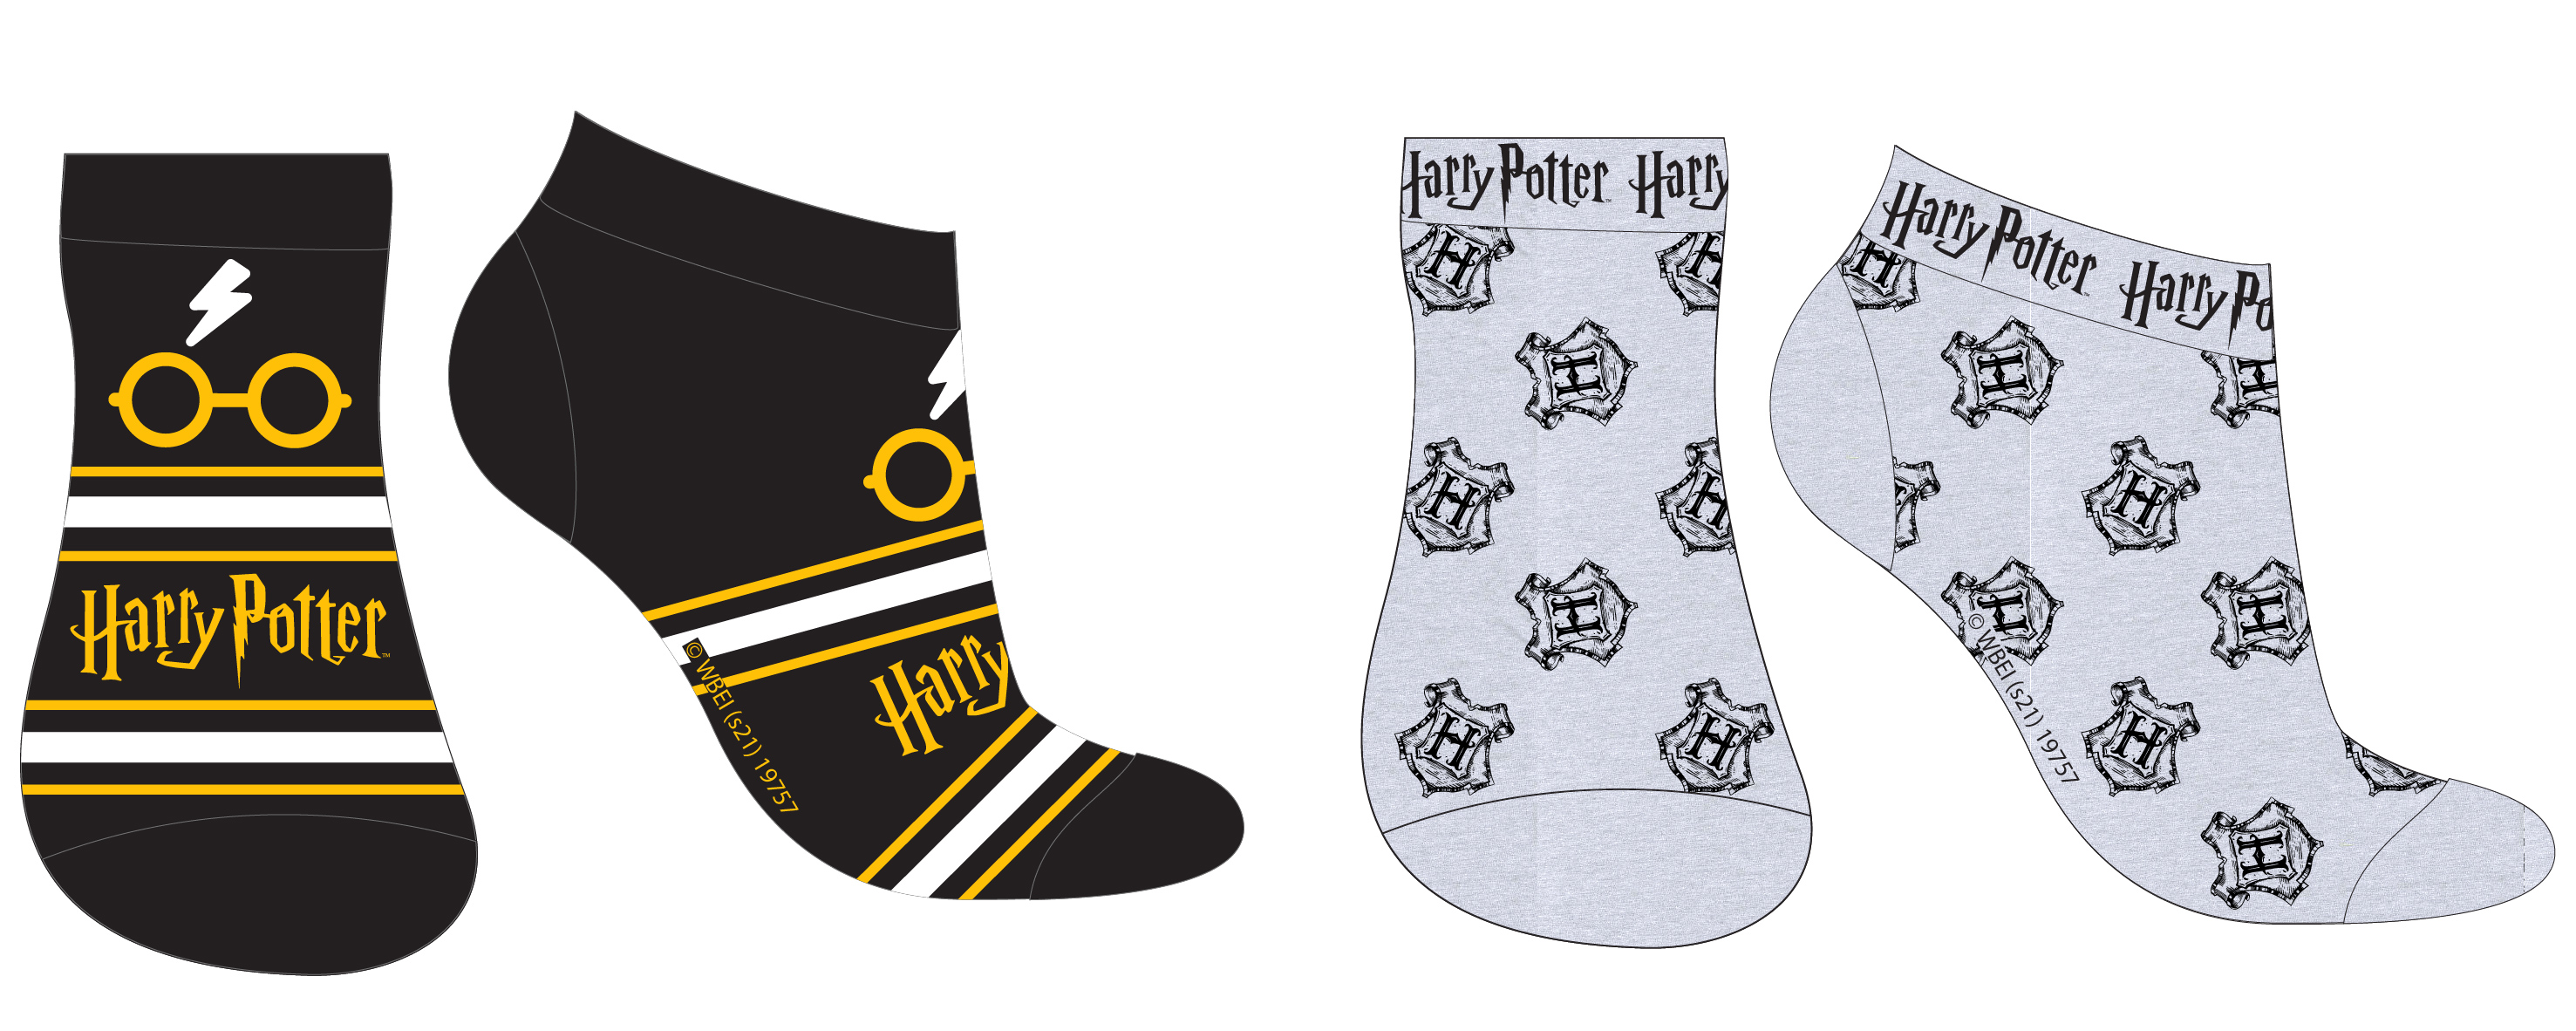 Harry Poter - licence Chlapecké kotníkové ponožky - Harry Potter 5234376, černá / šedá Barva: Mix barev, Velikost: 27-30